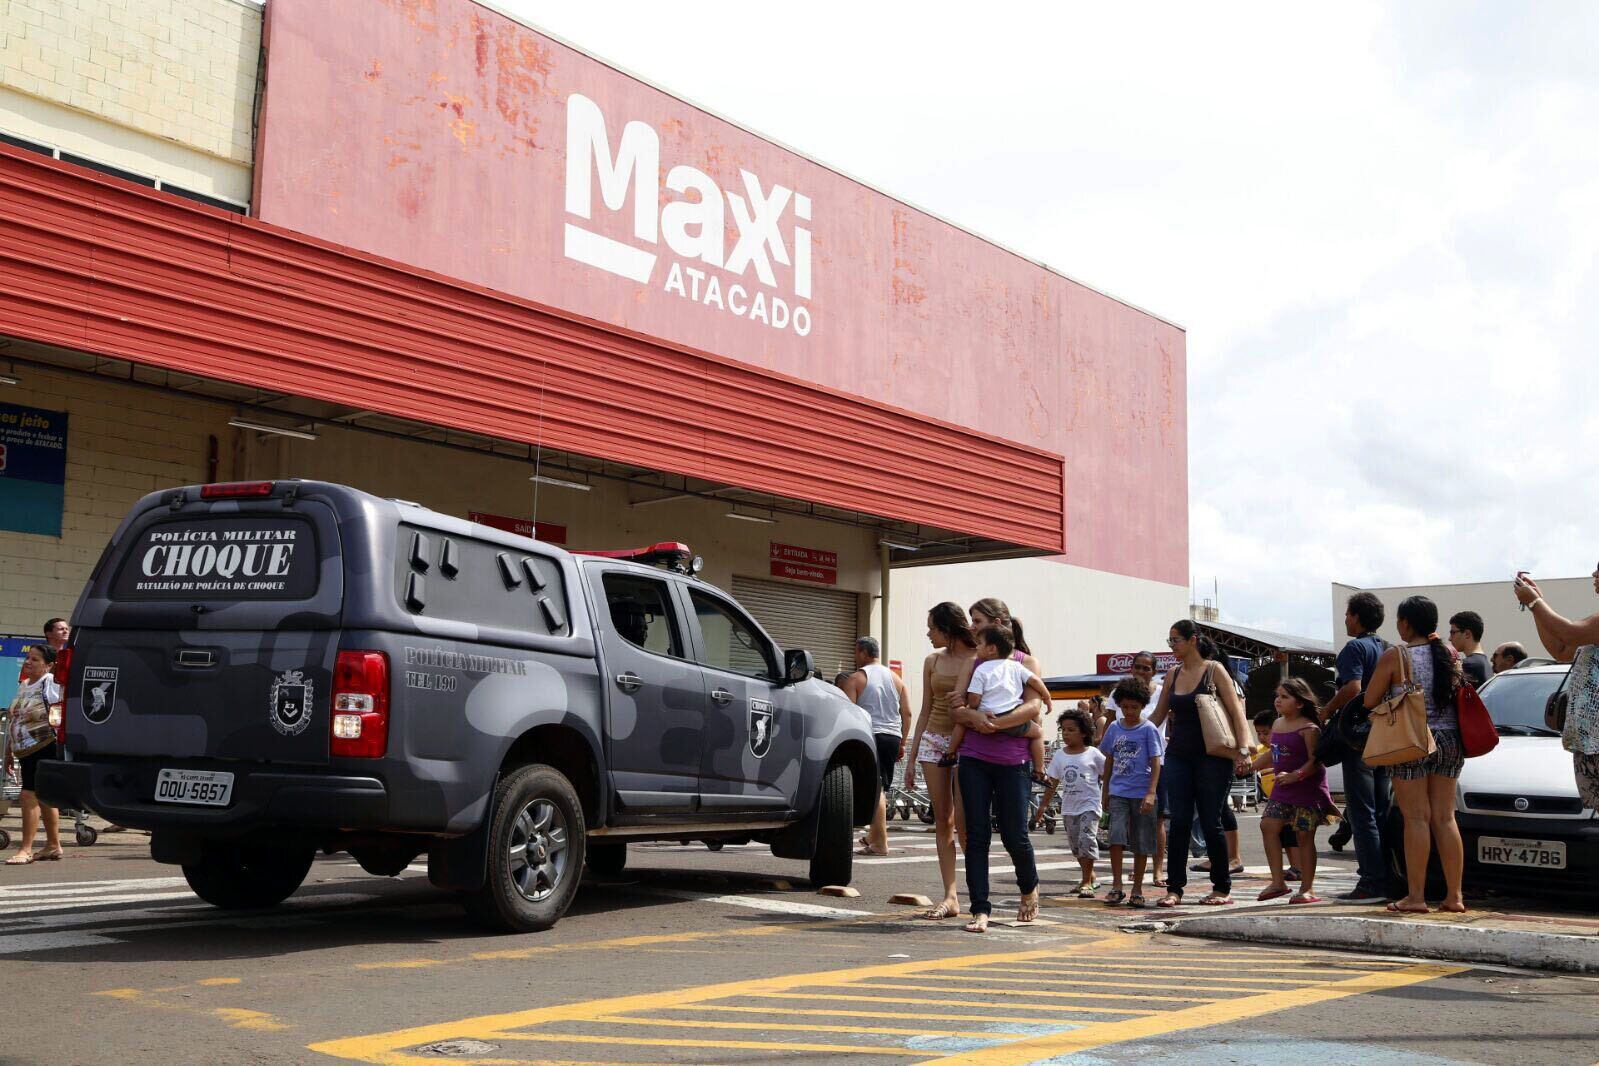 Walmart fecha mais duas lojas Nacional em Porto Alegre